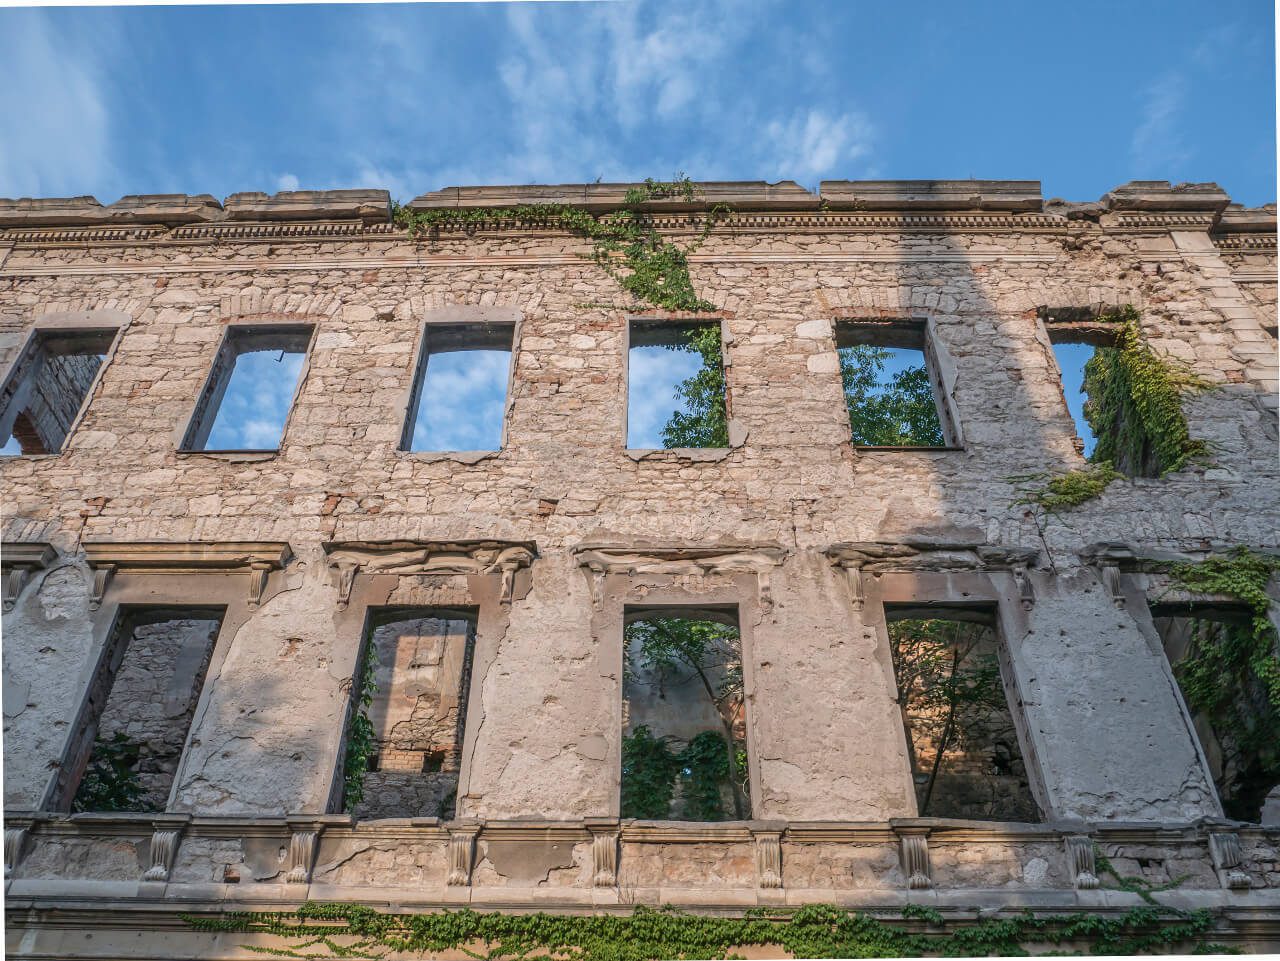 Ruiny wojenne w Mostarze przy ulicy Marszala Tity